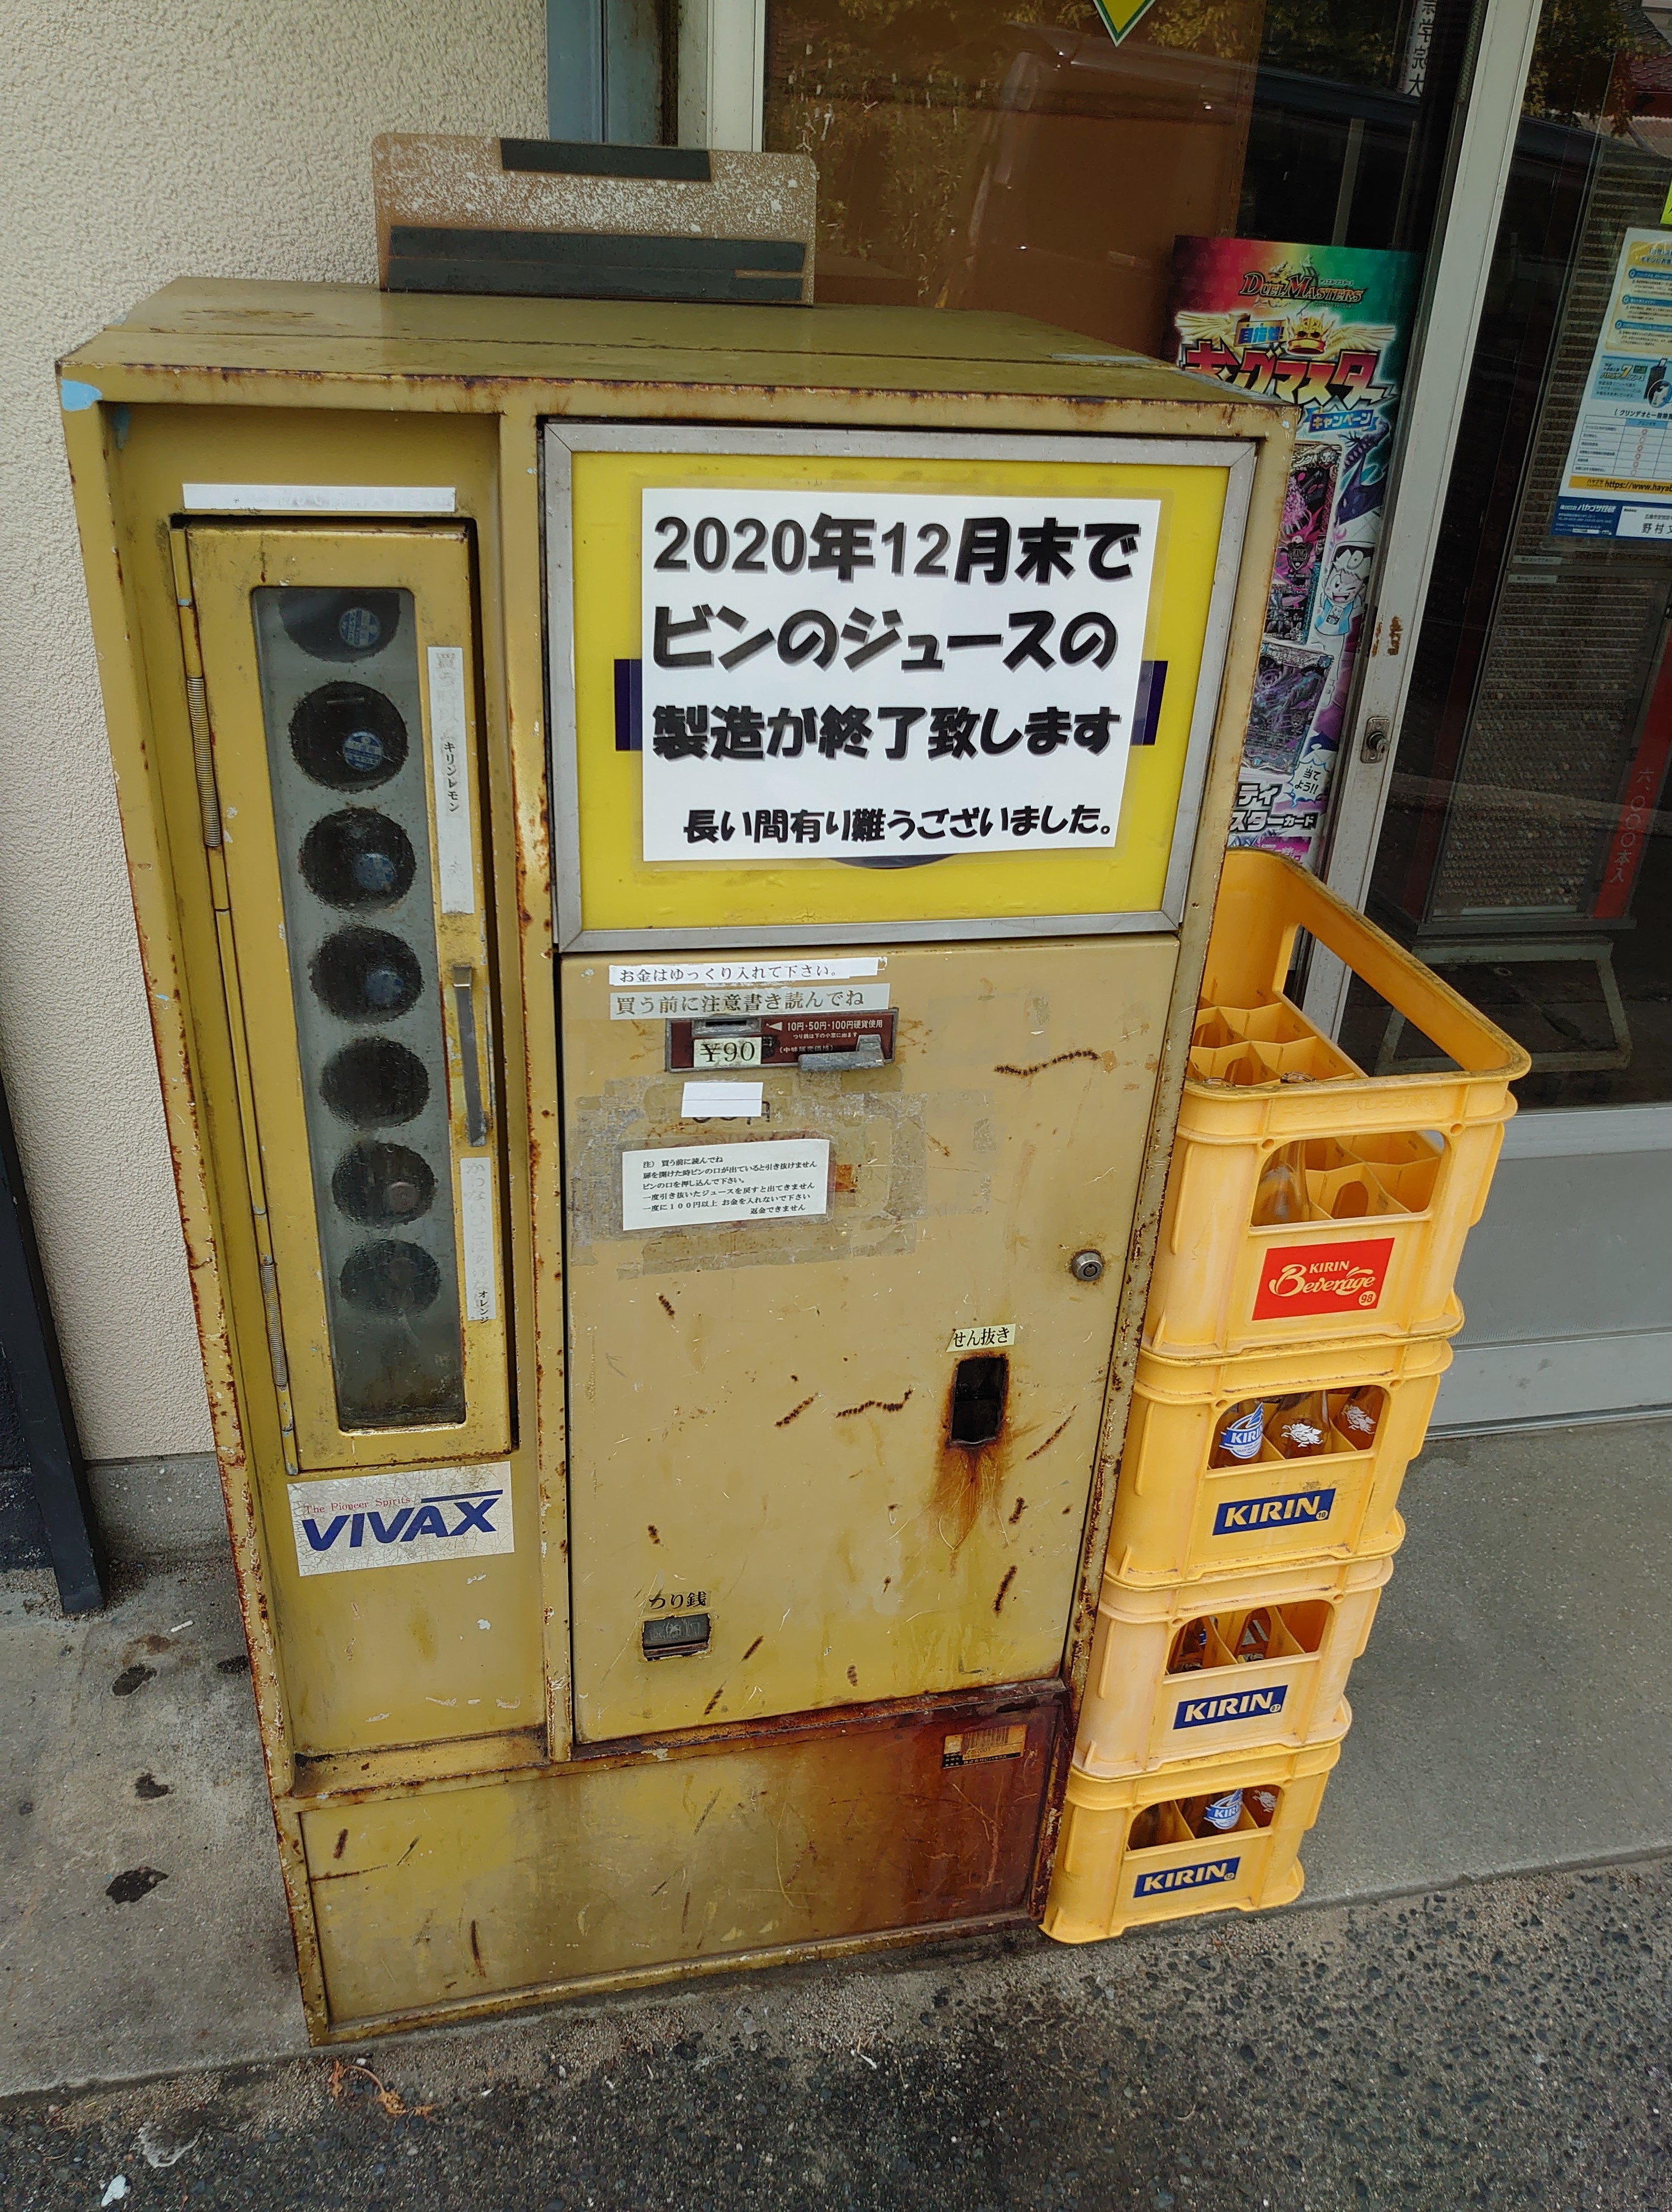 珍しい自販機に行ってきました ダイハツ広島販売 呉広店